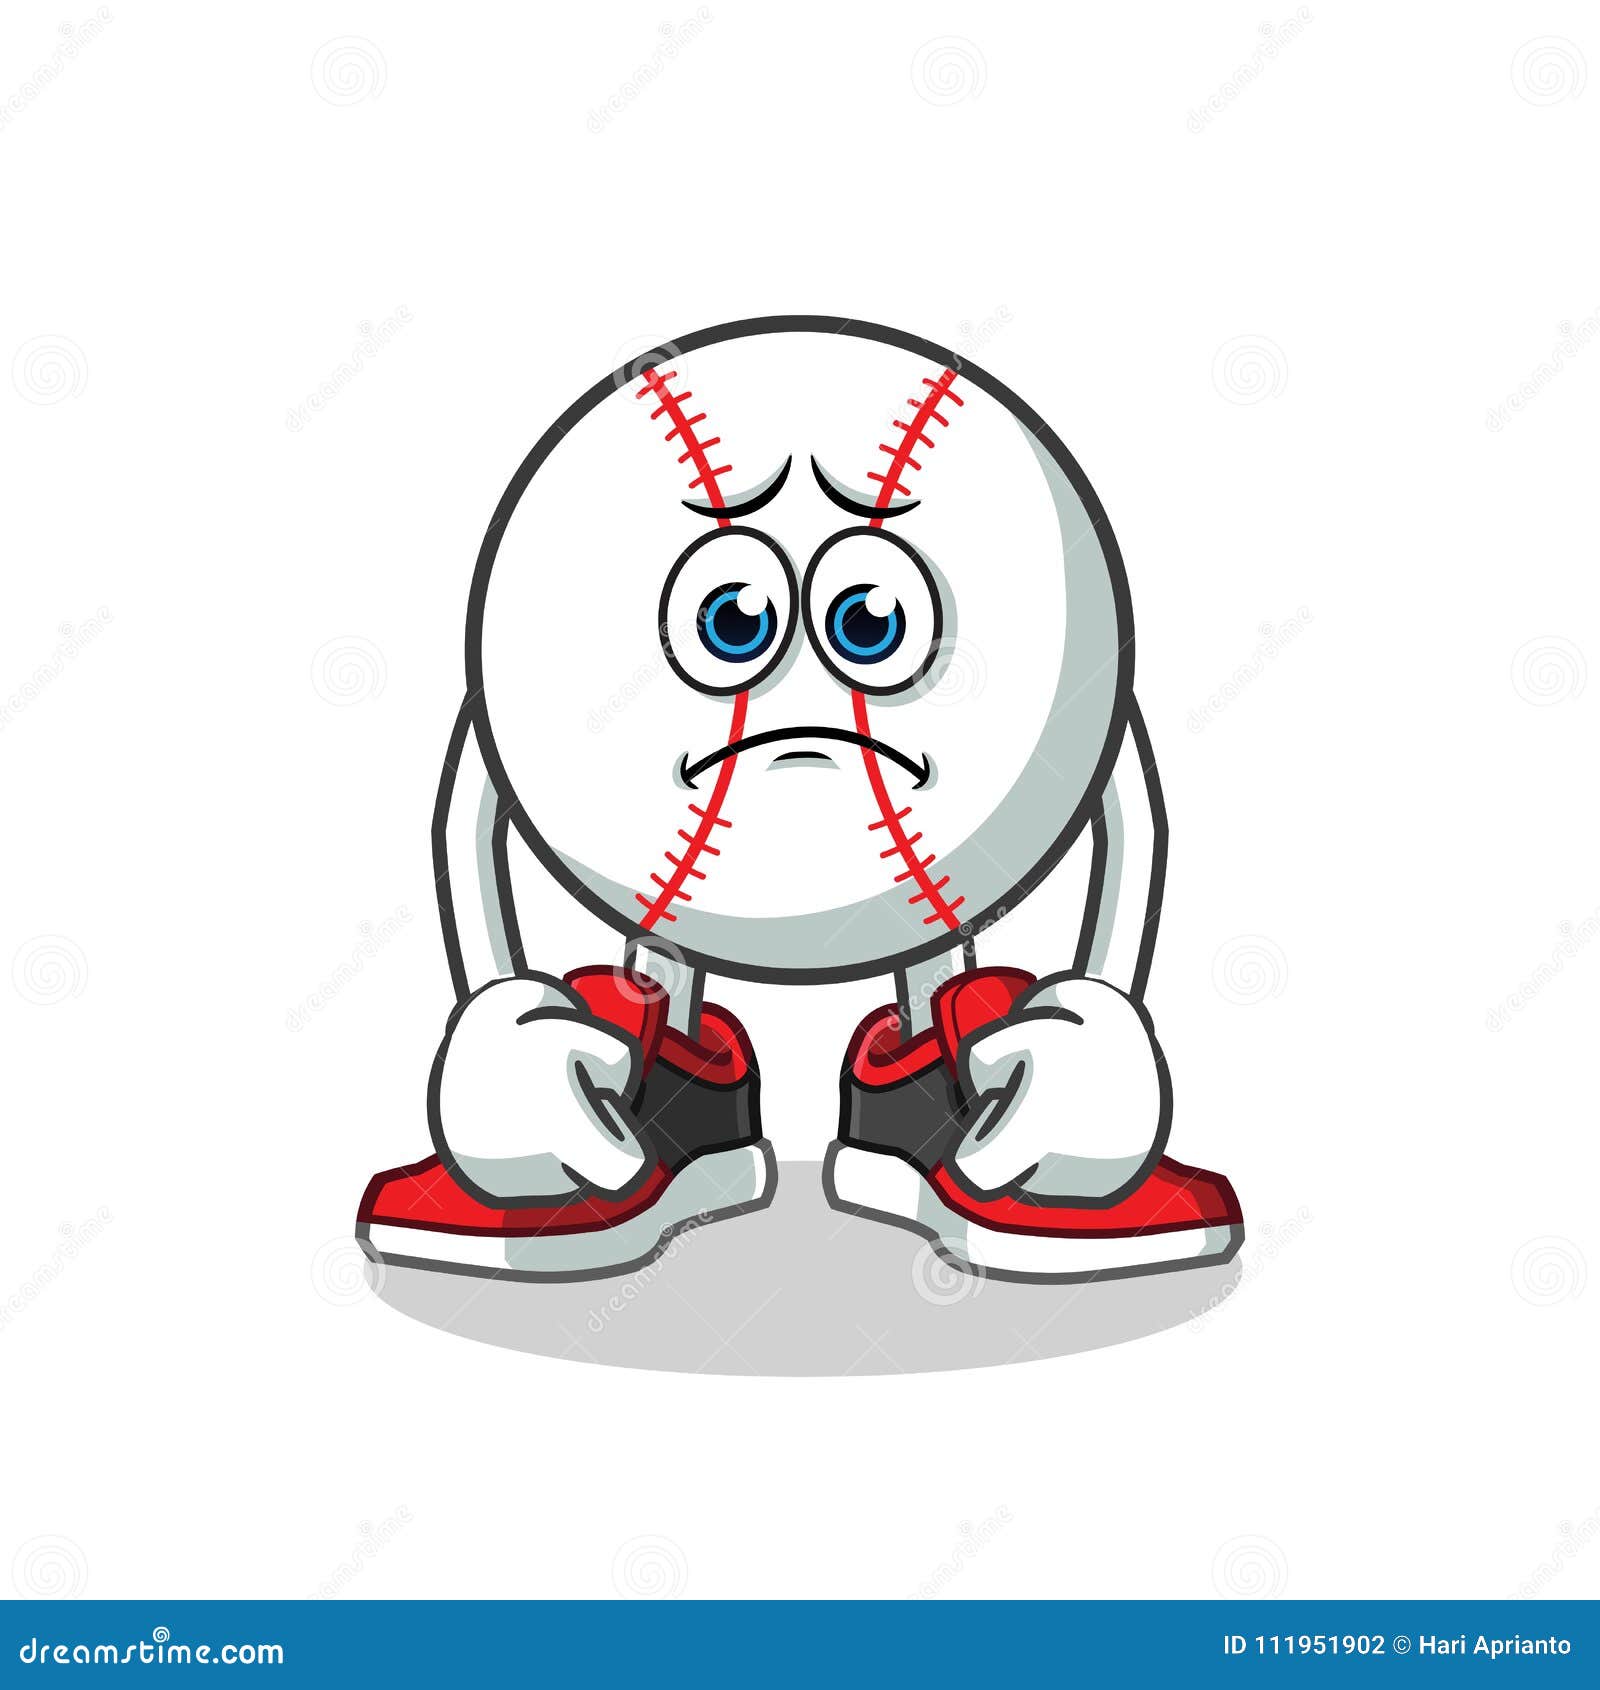 sad-baseball-mascot-vector-cartoon-illustration-original-mascot-sad-baseball-mascot-vector-cartoon-illustration-111951902.jpg